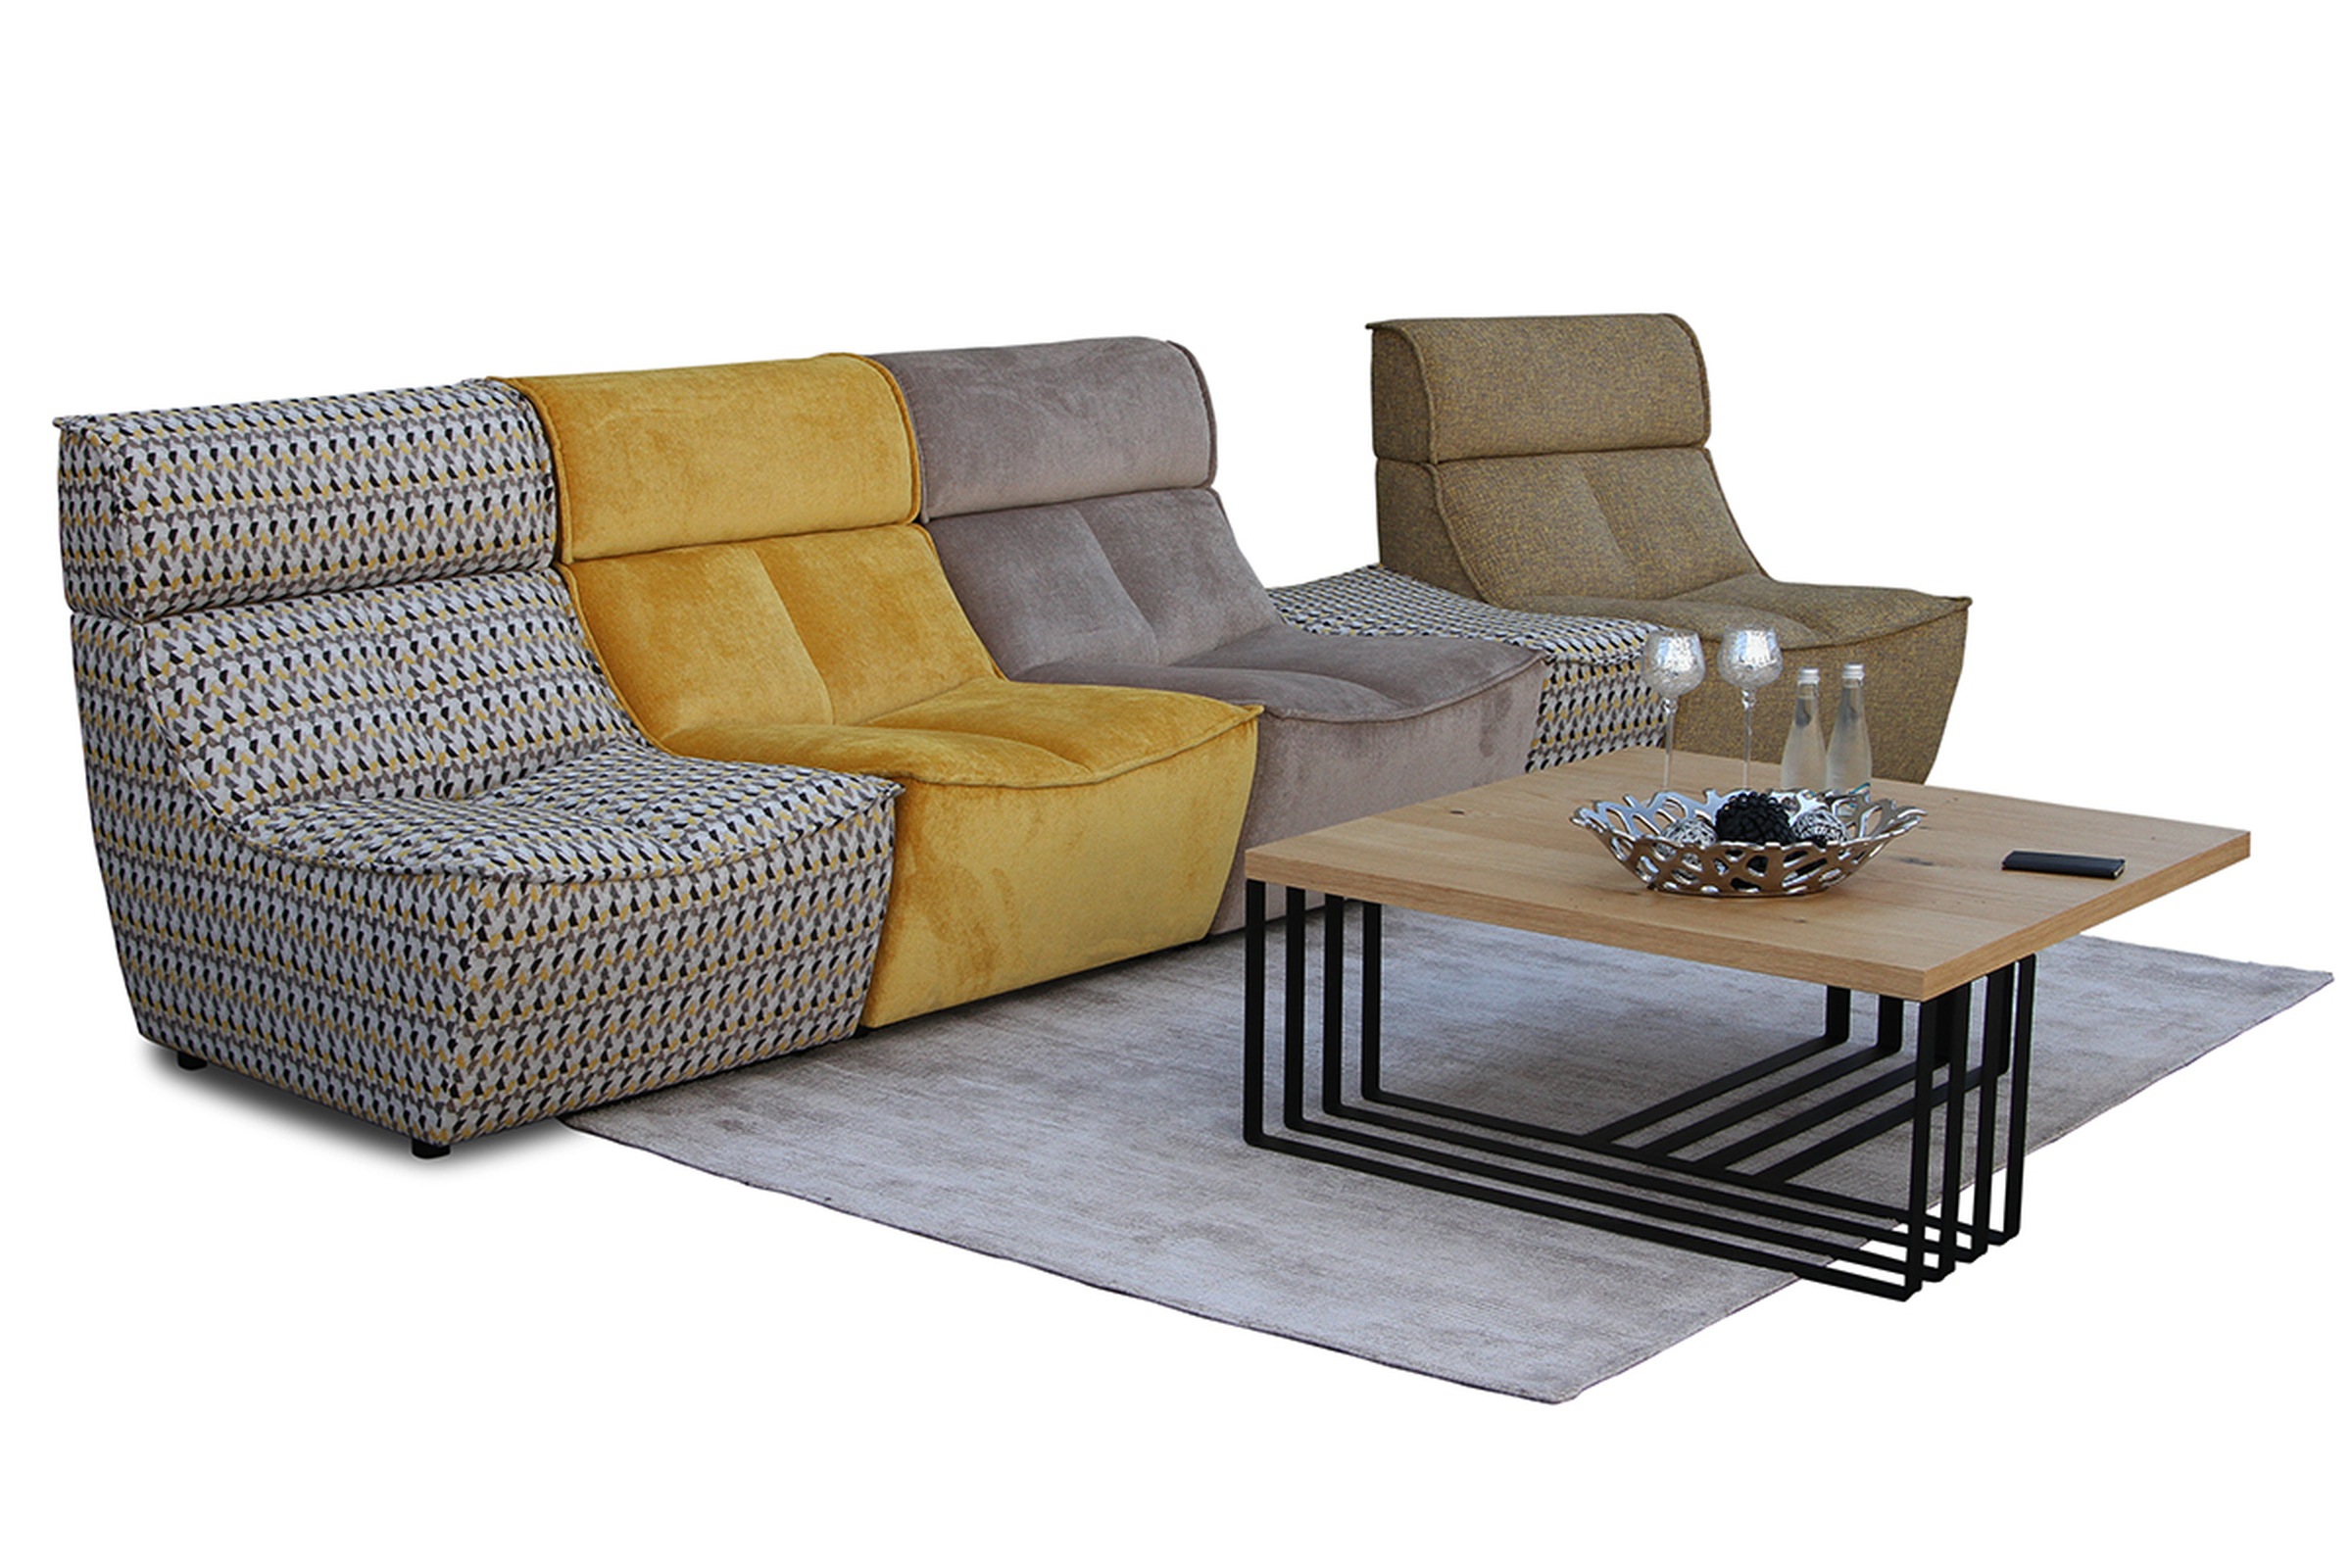 Viva - sofa modułowa z barwną, niejednolitą tapicerką, do tworzenia indywidualnych kompozycji kolorystycznych sofy